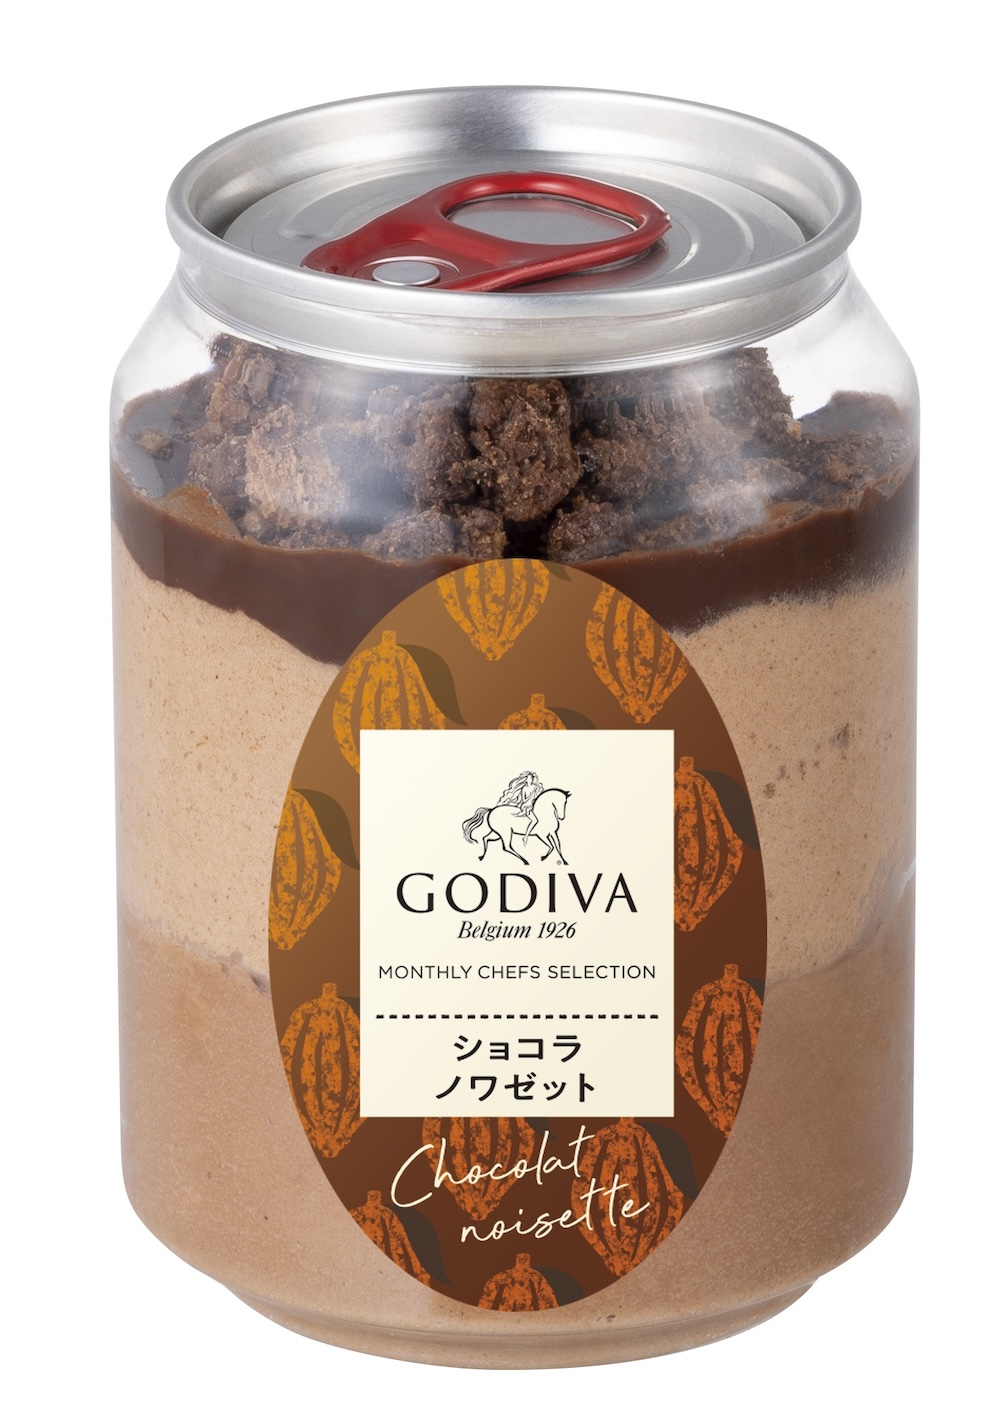 「スプーンで食べるケーキ缶 ショコラ ノワゼット」税込み1,598円